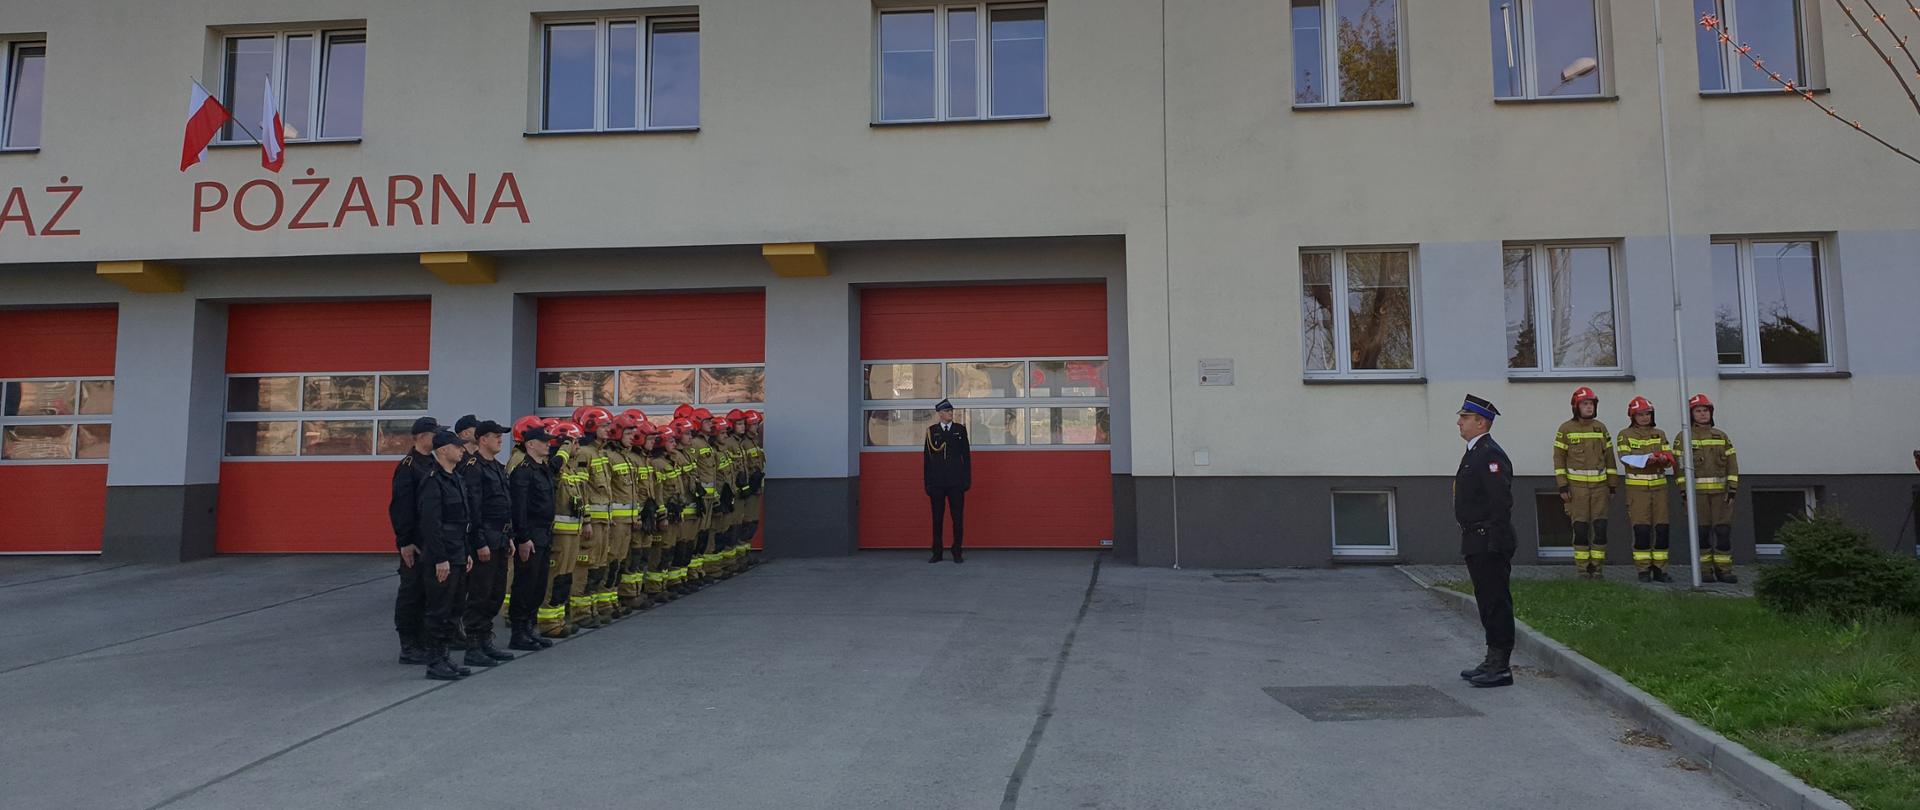 Uczczenie Dnia Flagi Rzeczpospolitej Polskiej przez jaworznickich strażaków. Na tle Komendy Miejskiej jaworzniccy strażacy wywieszają flagę na maszt.